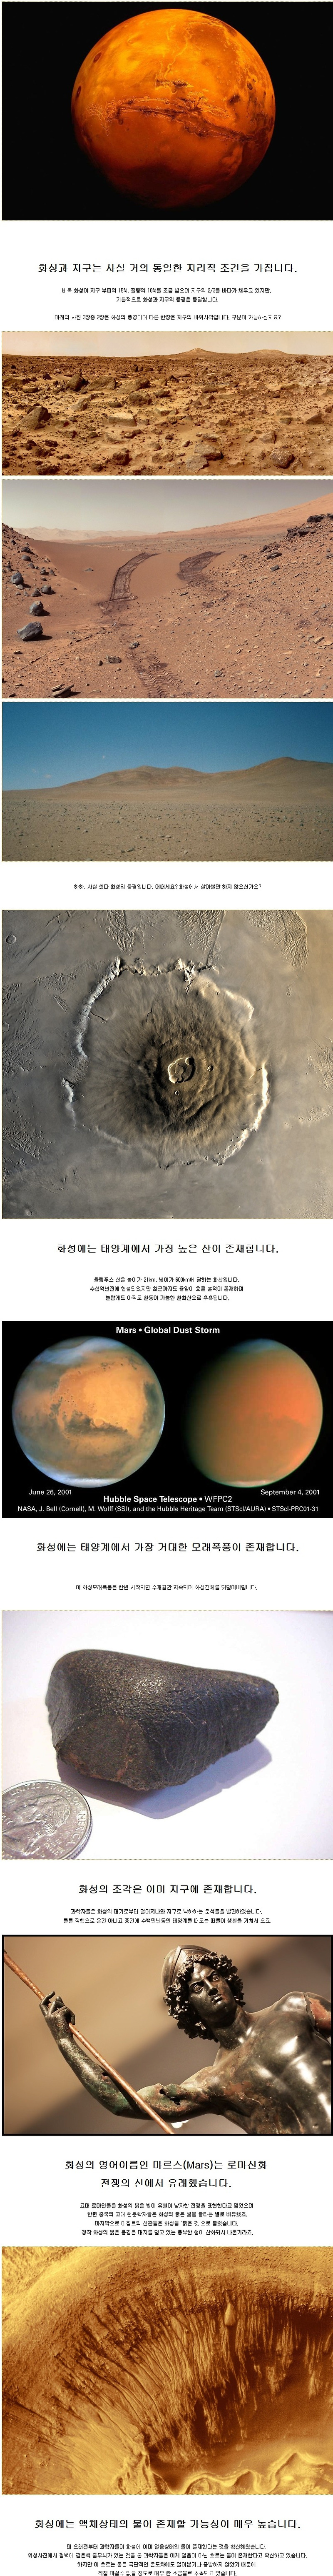 화성의 신비한 사실들.jpg